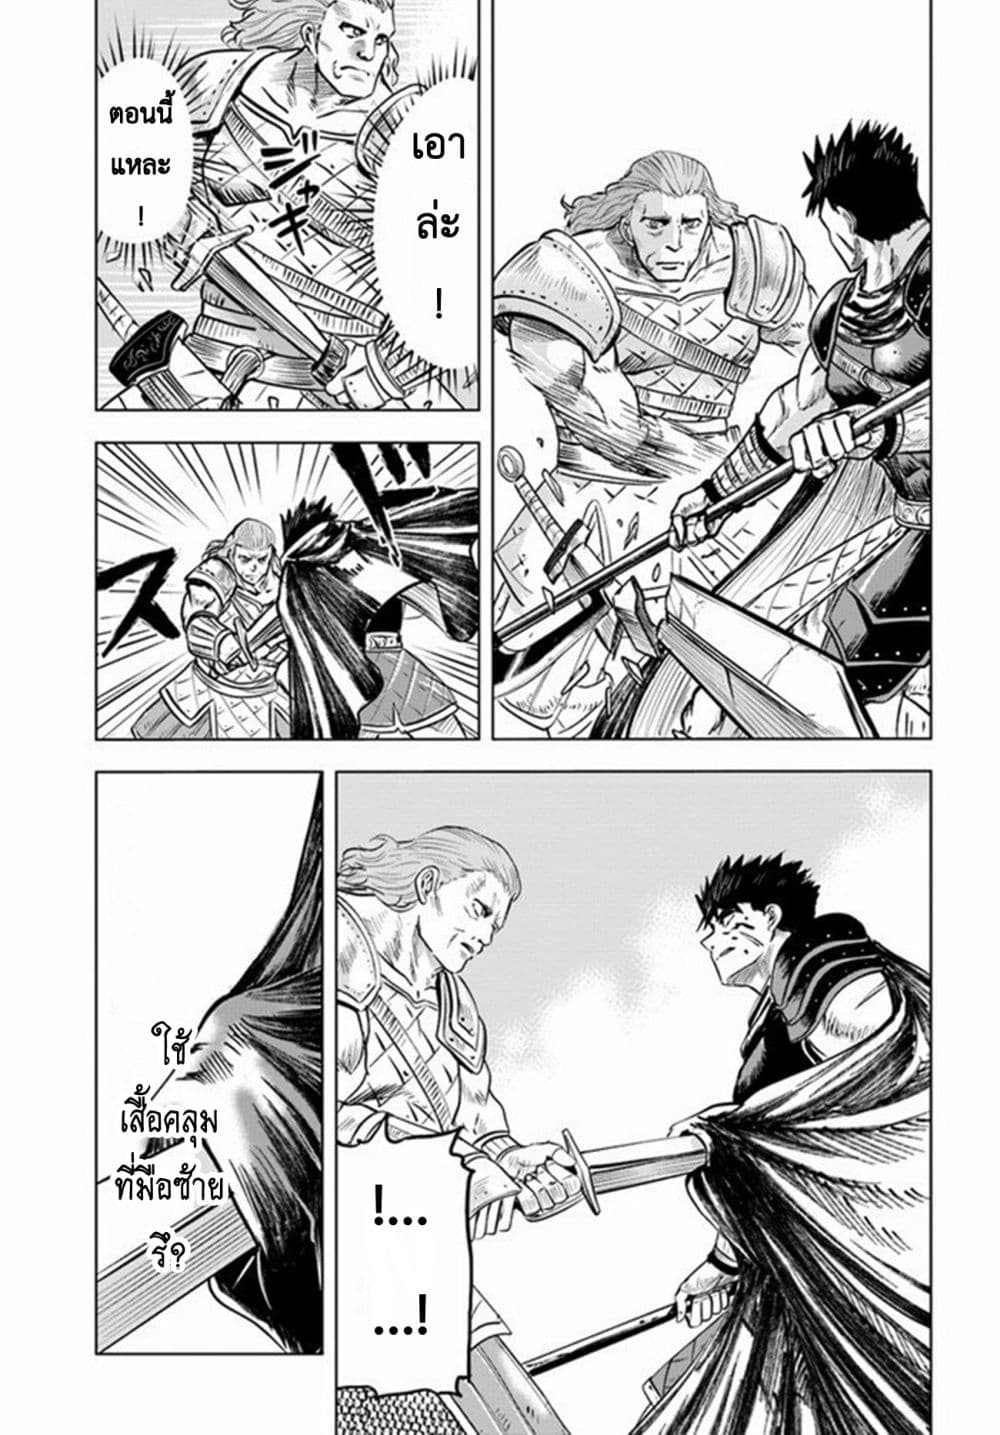 Oukoku e Tsuzuku Michi dorei Kenshi no Nariagari Eiyutan (Haaremu Raifu) - Road to the Kingdom Slave Swordsman the Rise of Heroes - Harem Life 10-10